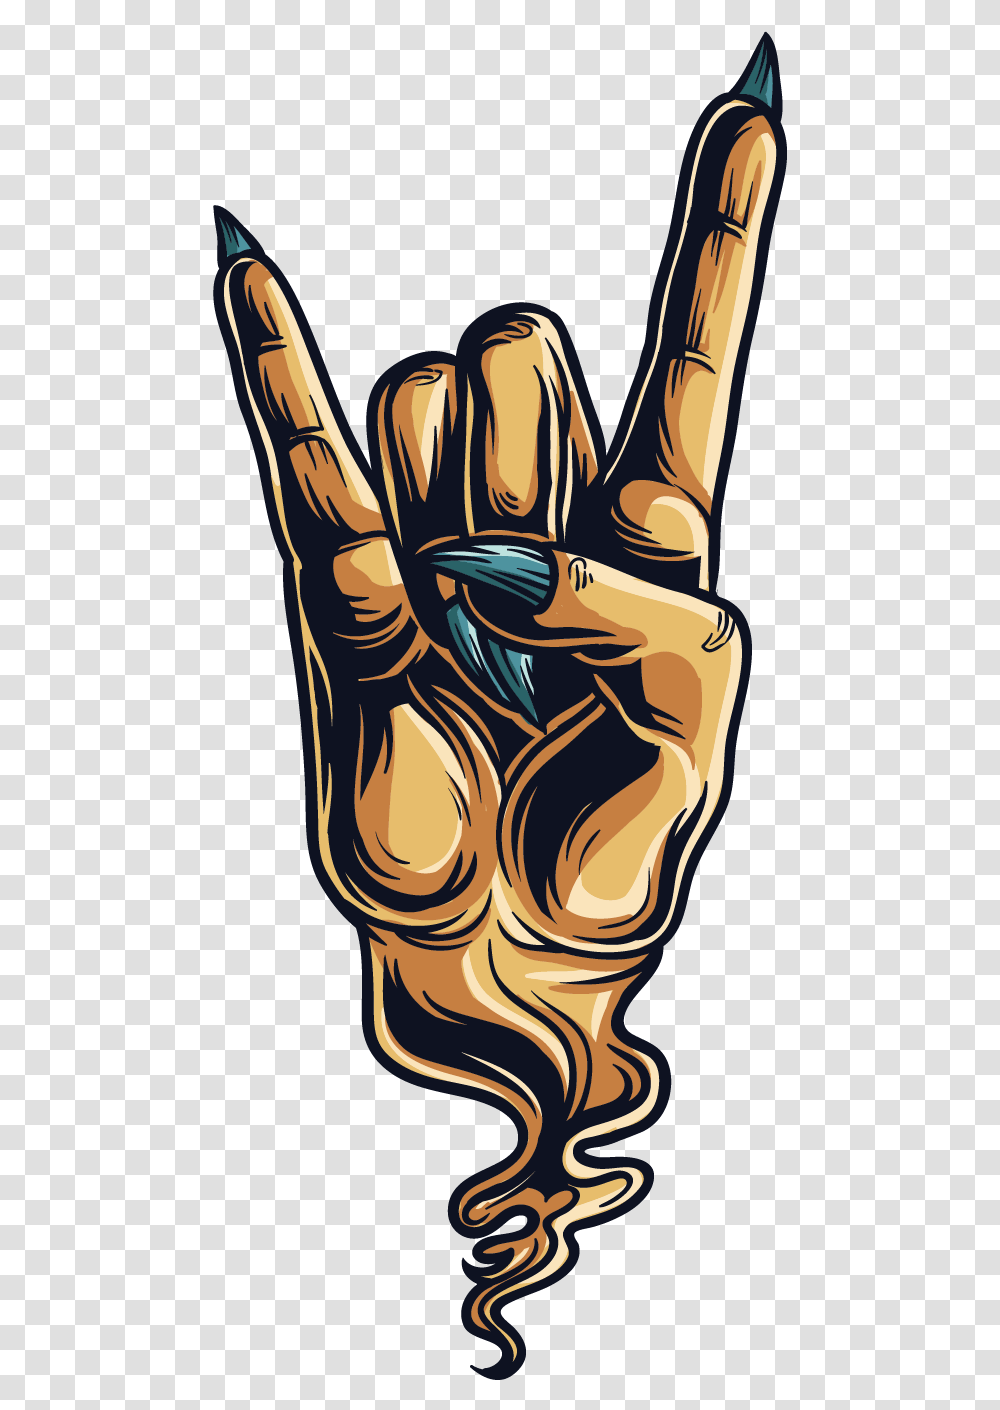 Sign Of The Horns Devil Hand Gesture Sticker Devil Horns Hand, Hook, Fist, Arm Transparent Png